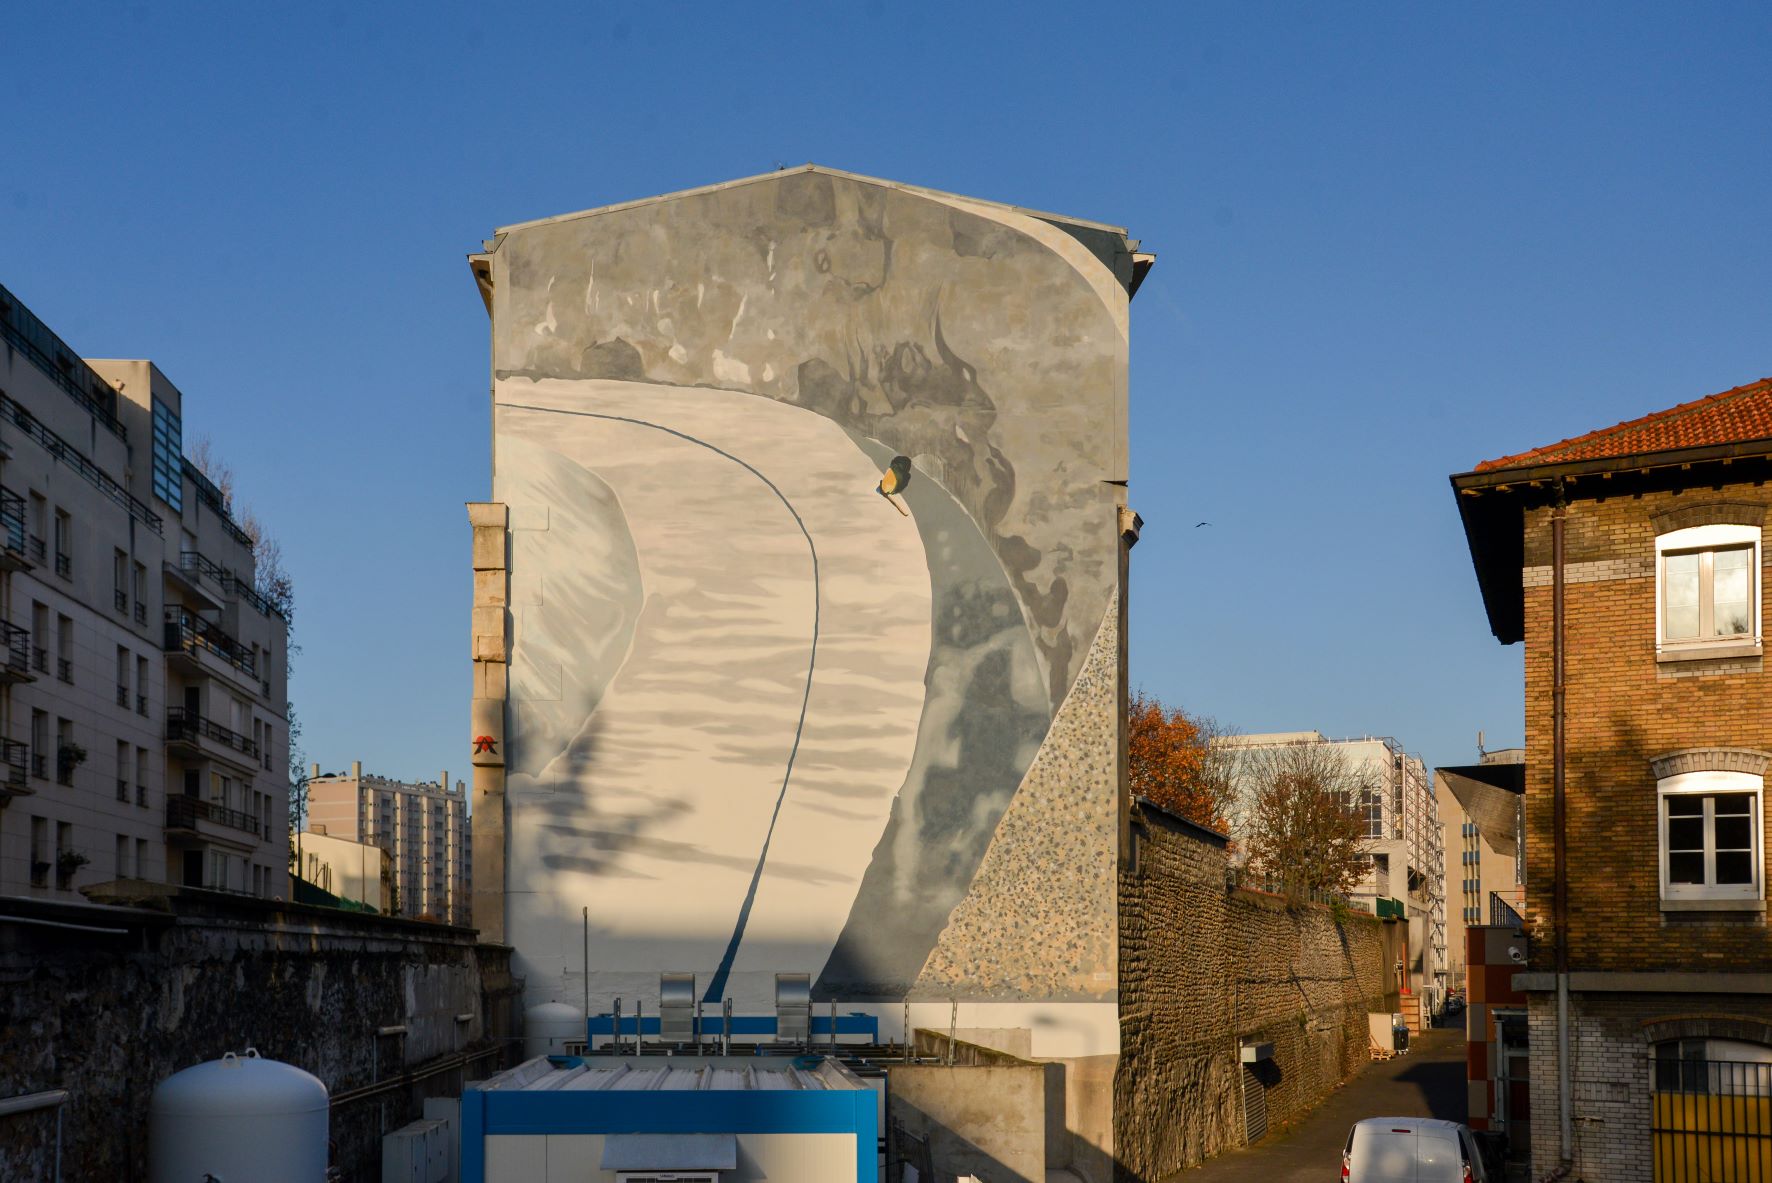 Peinture murale "La Route" par Gilles Aillaud restaurée en novembre 2022